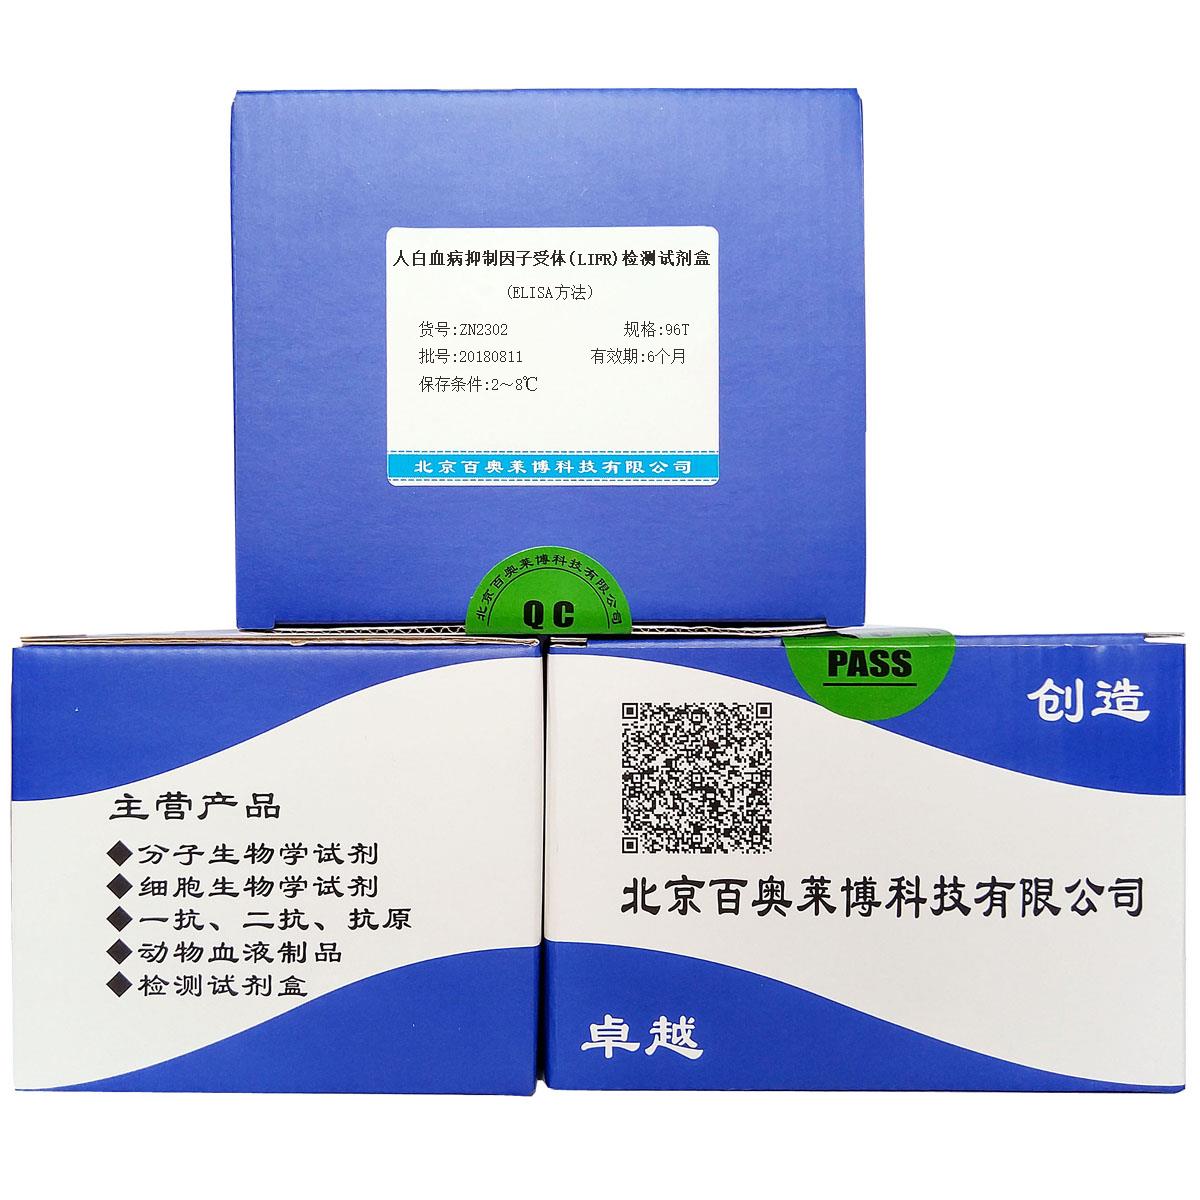 人白血病抑制因子受体(LIFR)检测试剂盒(ELISA方法)